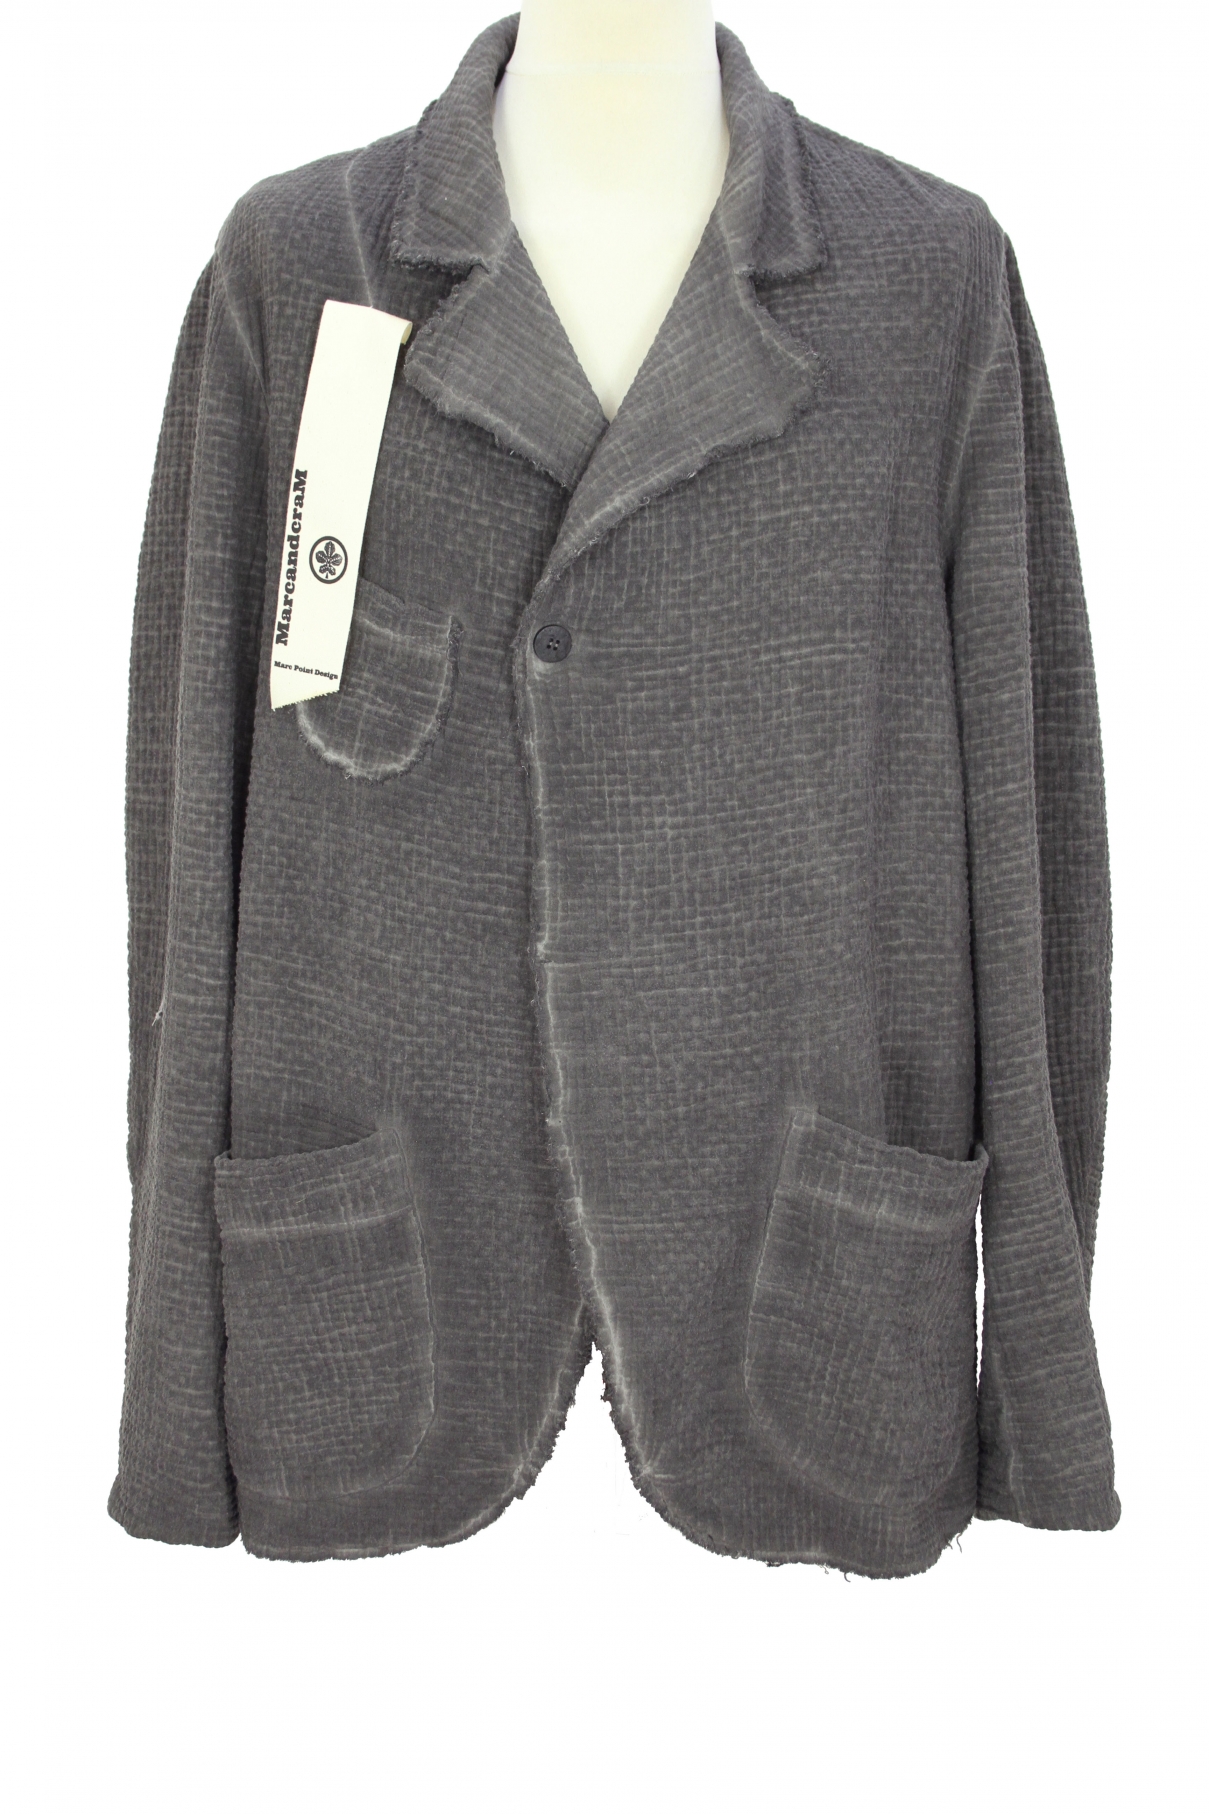 MarcandcraM Overdyed  Grey Soft fabric, oversized Jacket